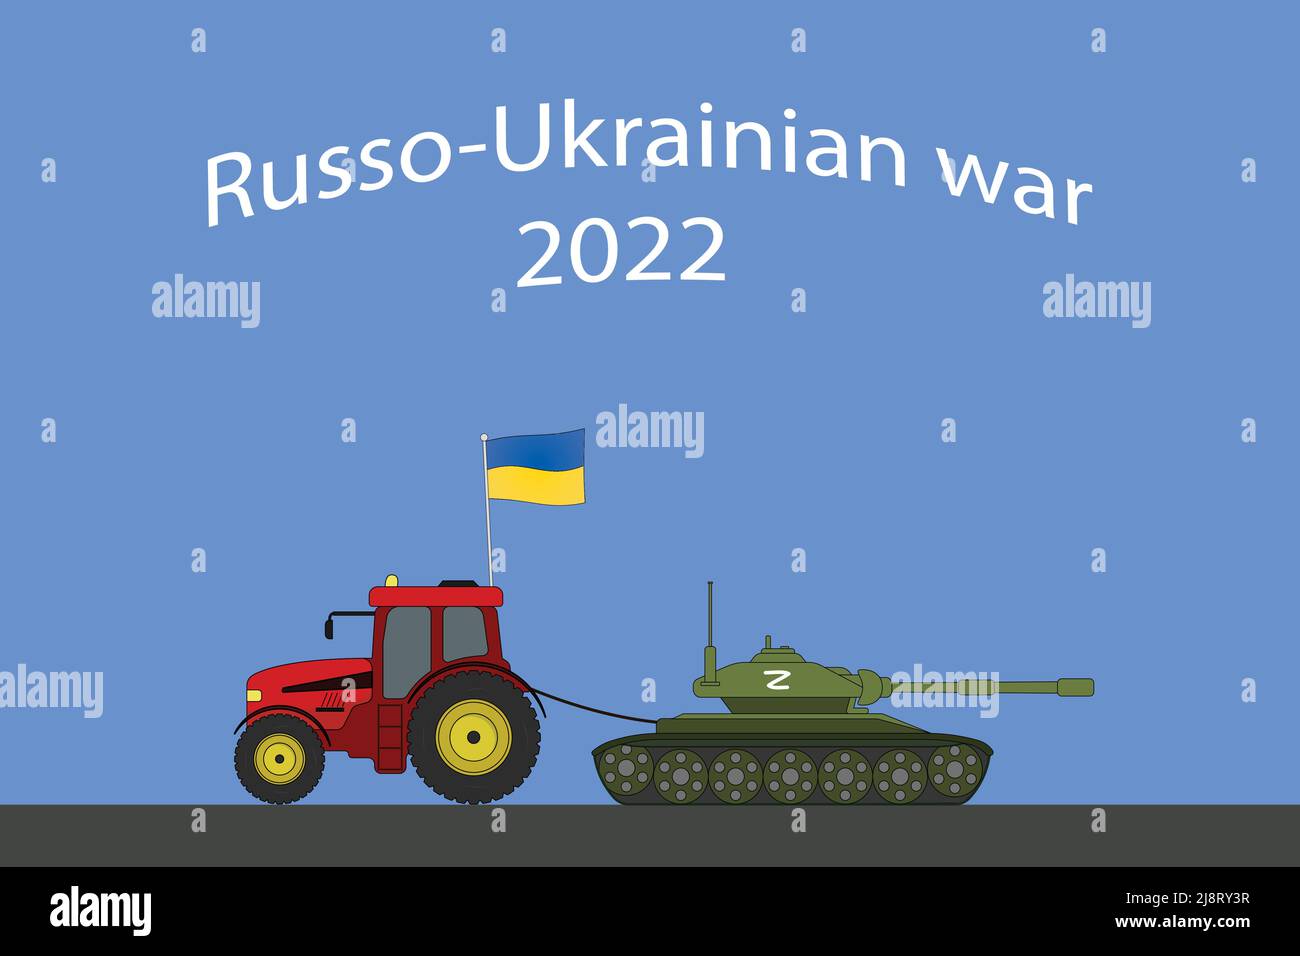 Russisch-ukrainischer Krieg: Ukrainischer Traktor schlepper einen russischen Panzer weg - Vektordarstellung Stock Vektor